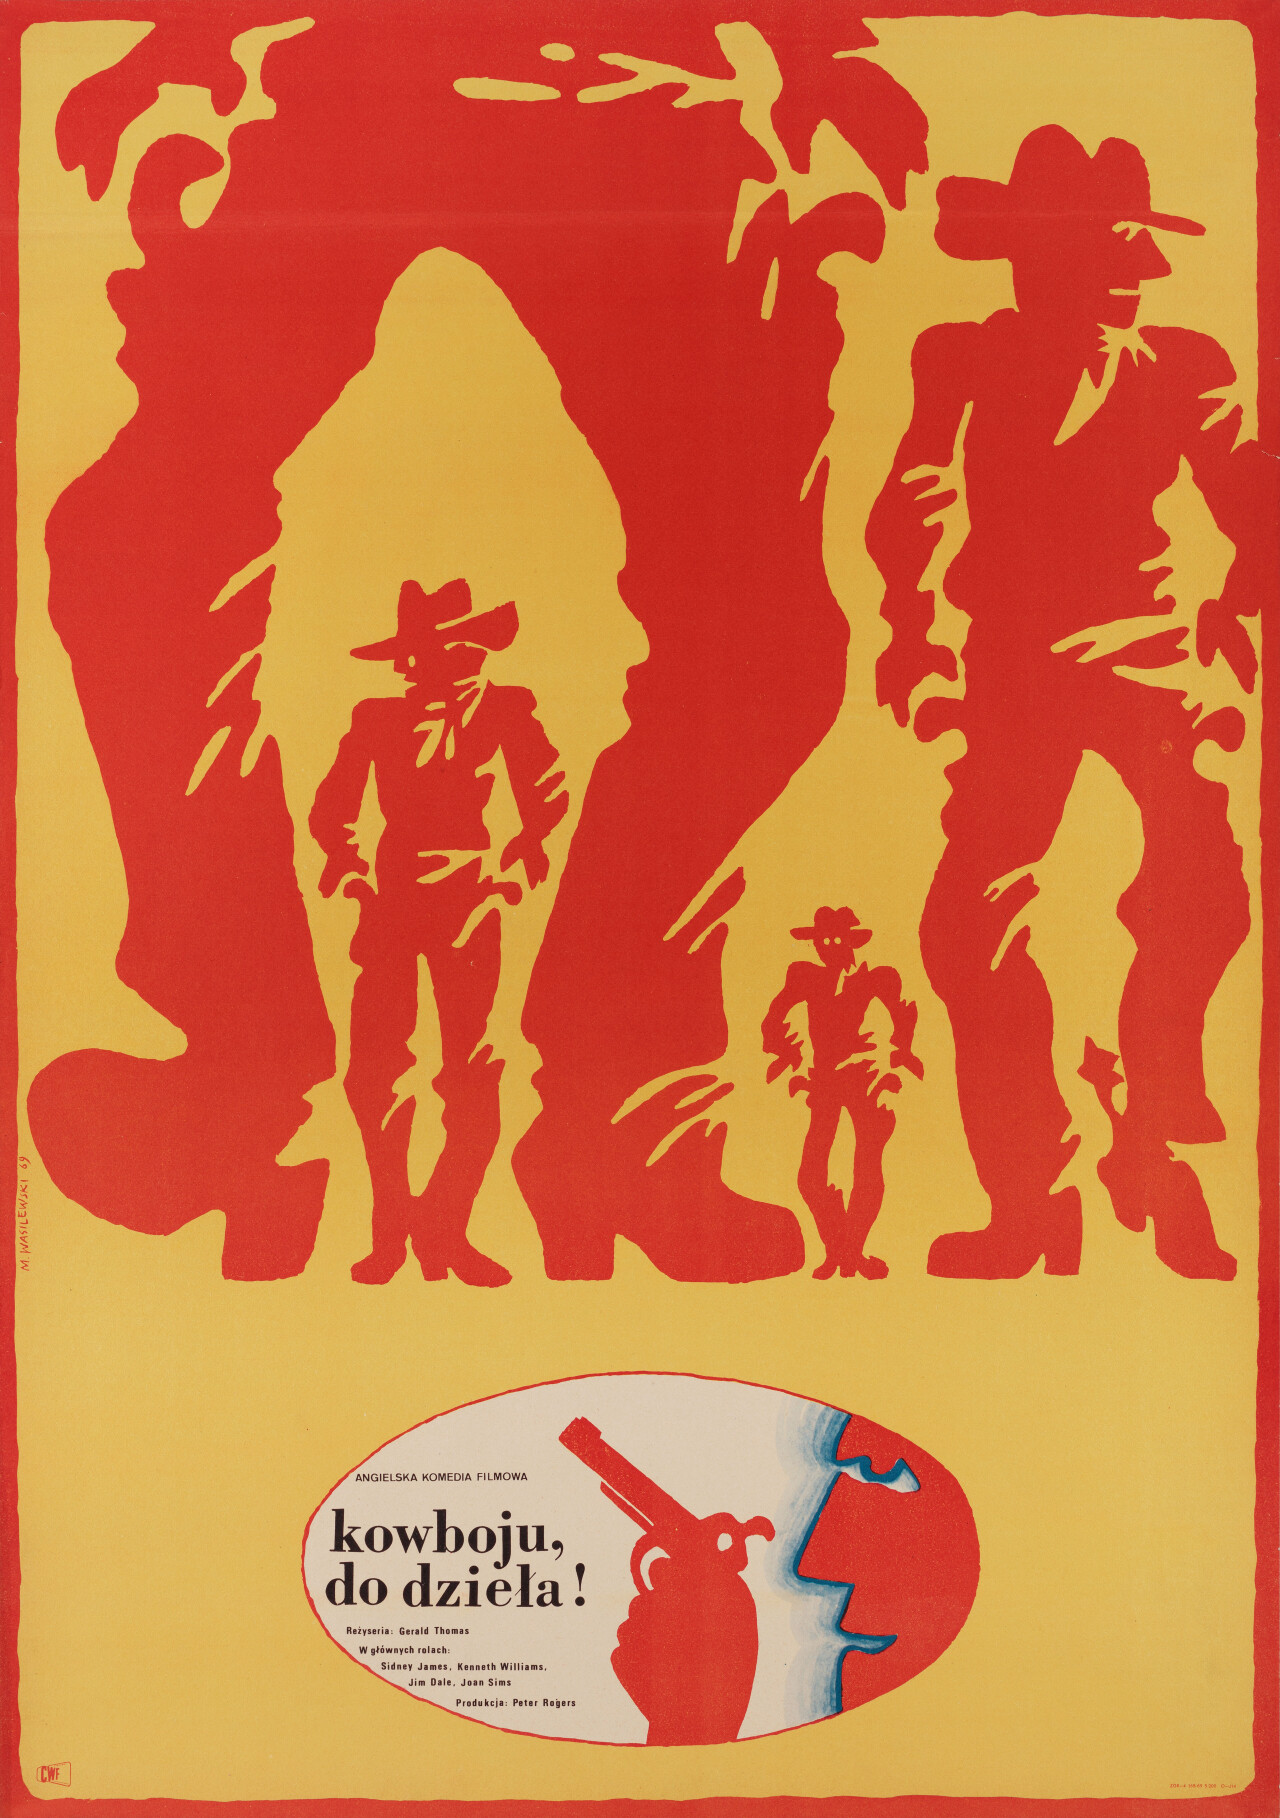 Так держать... Ковбой (Carry on Cowboy, 1966), режиссёр Джеральд Томас, польский постер к фильму, автор Мечислав Василевский (графический дизайн, 1969 год)